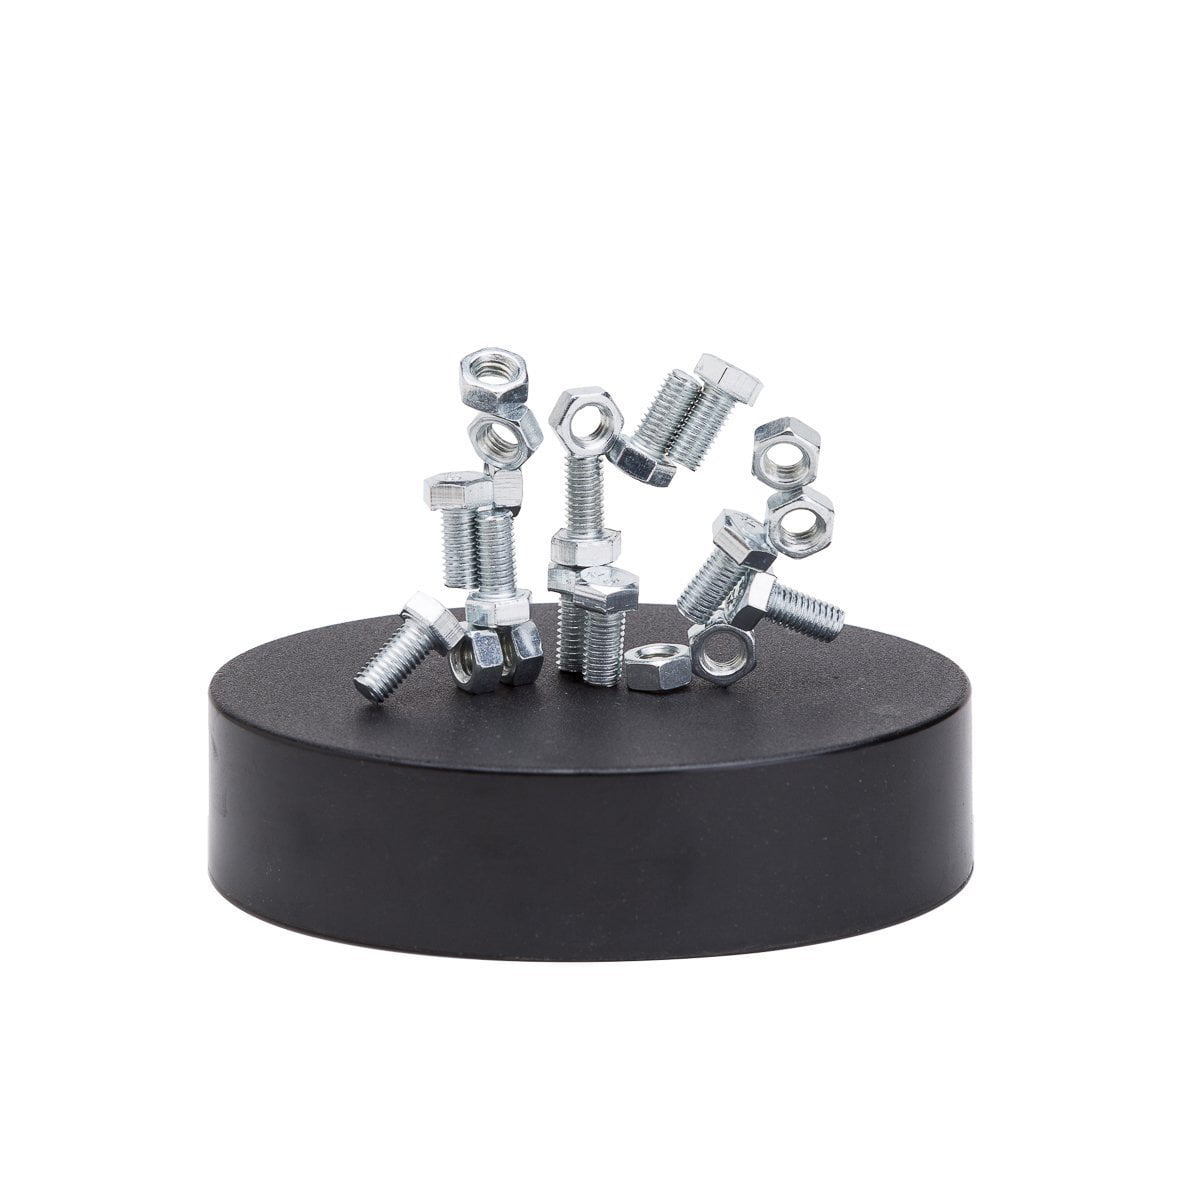 PowerTRC Magnetic Sculpture Desk Toy